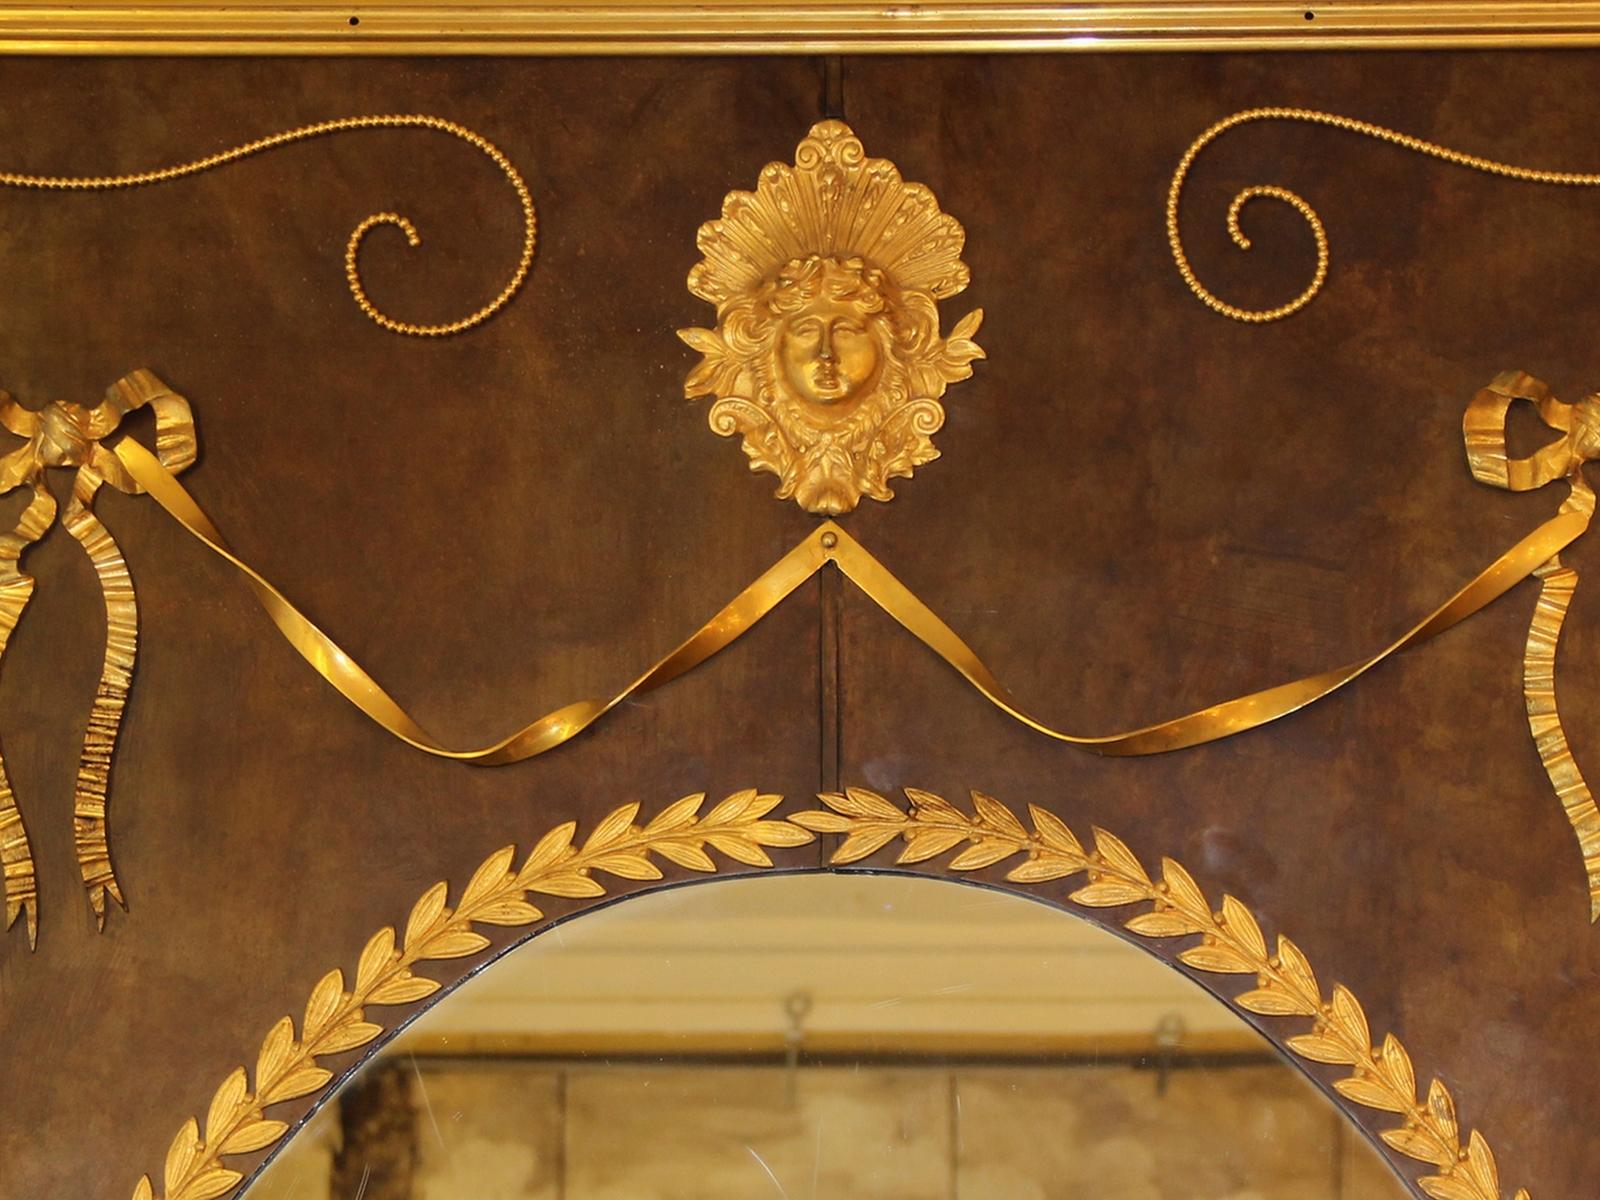 Ungewöhnlicher und großer Holzspiegel, ganz aus patiniertem Messing, mit Ornamenten aus vergoldetem Messing und vergoldeter Bronze. Der ovale Spiegel im Inneren ist ein originaler Quecksilberspiegel, der einige Kratzer aufweist. Die Rückseite des